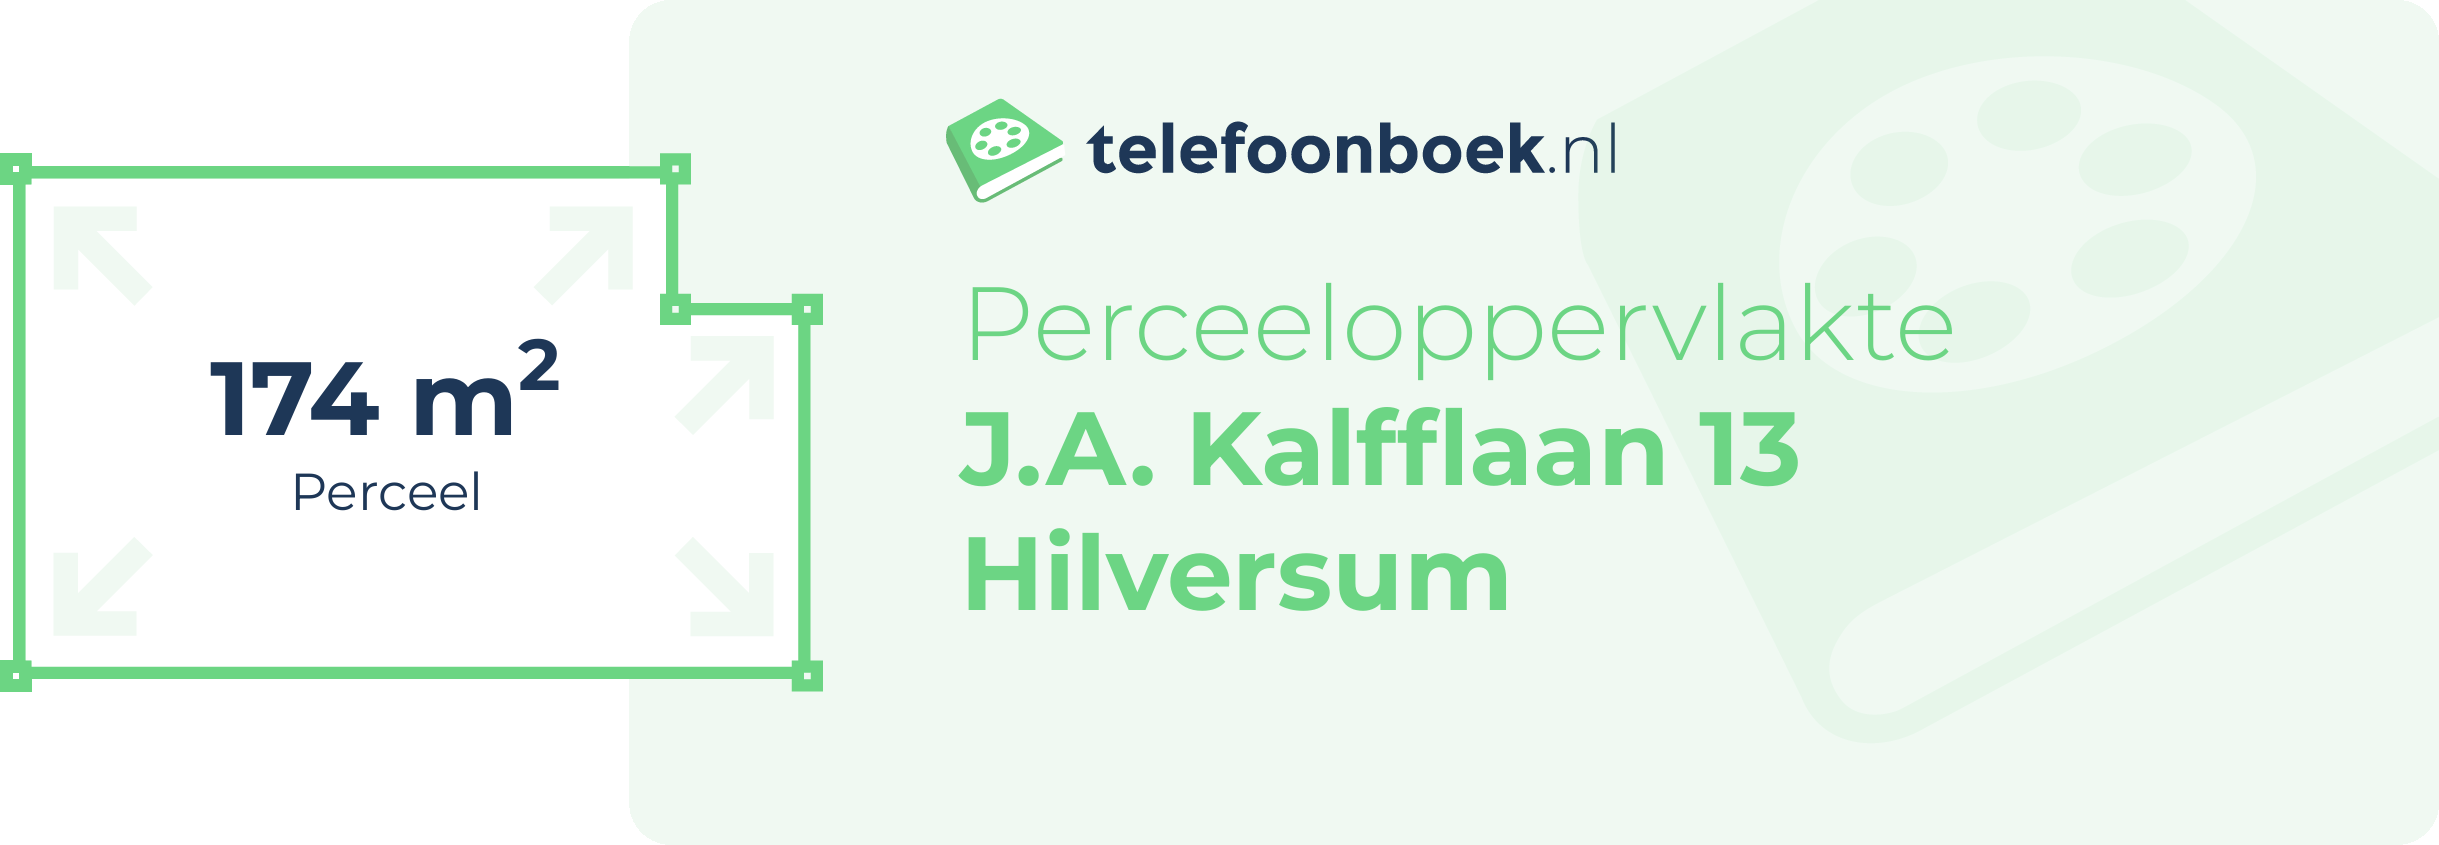 Perceeloppervlakte J.A. Kalfflaan 13 Hilversum